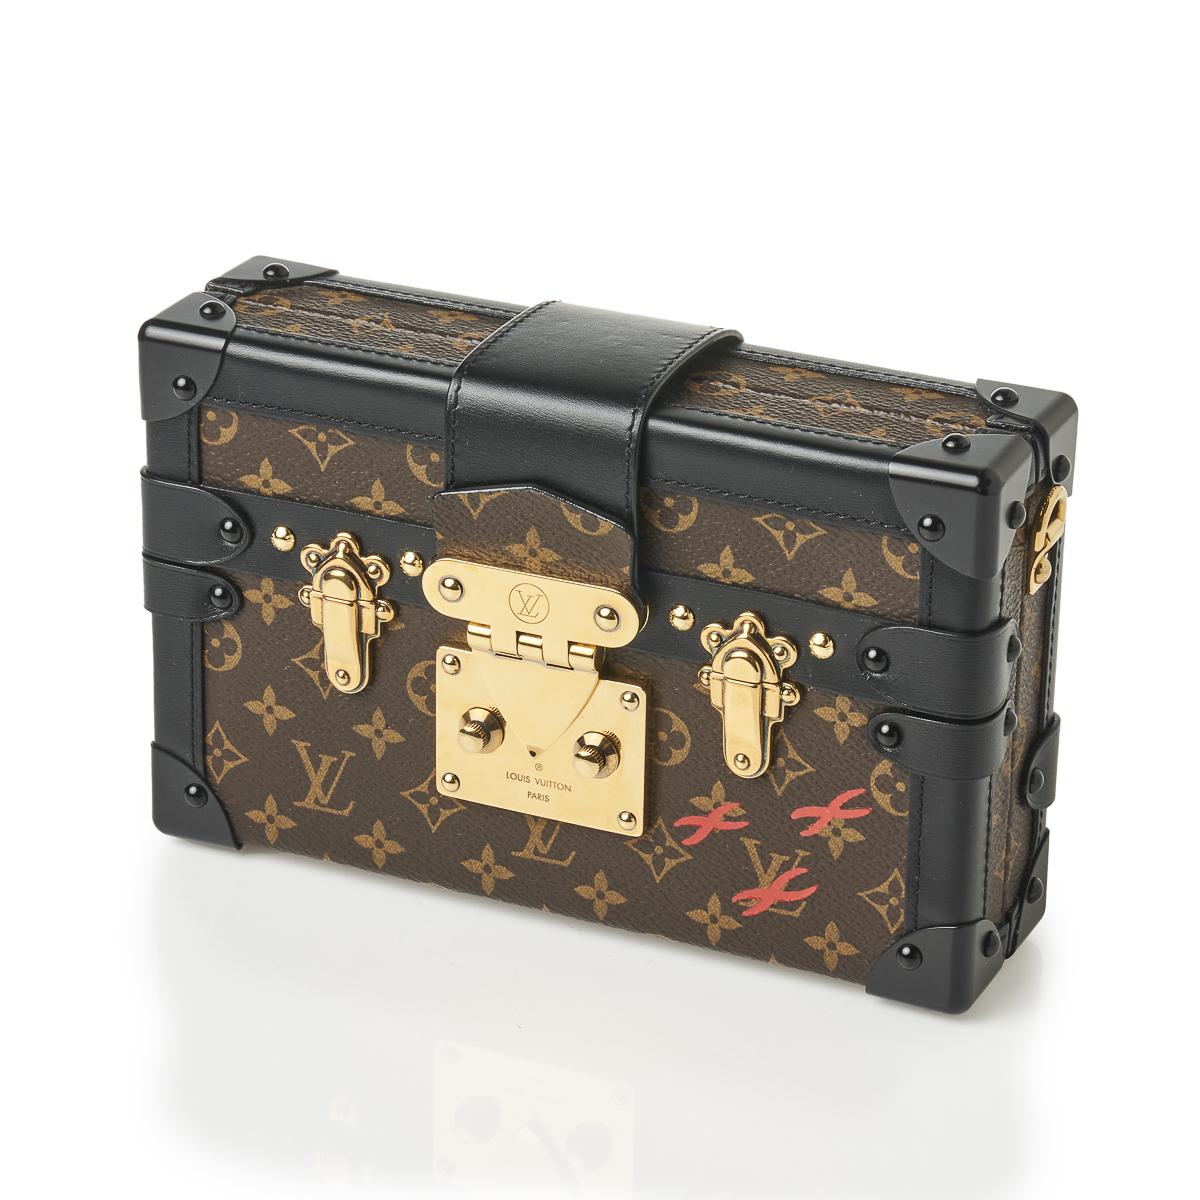 Sold at Auction: LOUIS VUITTON Petite Malle Monogram Trunk Handbag